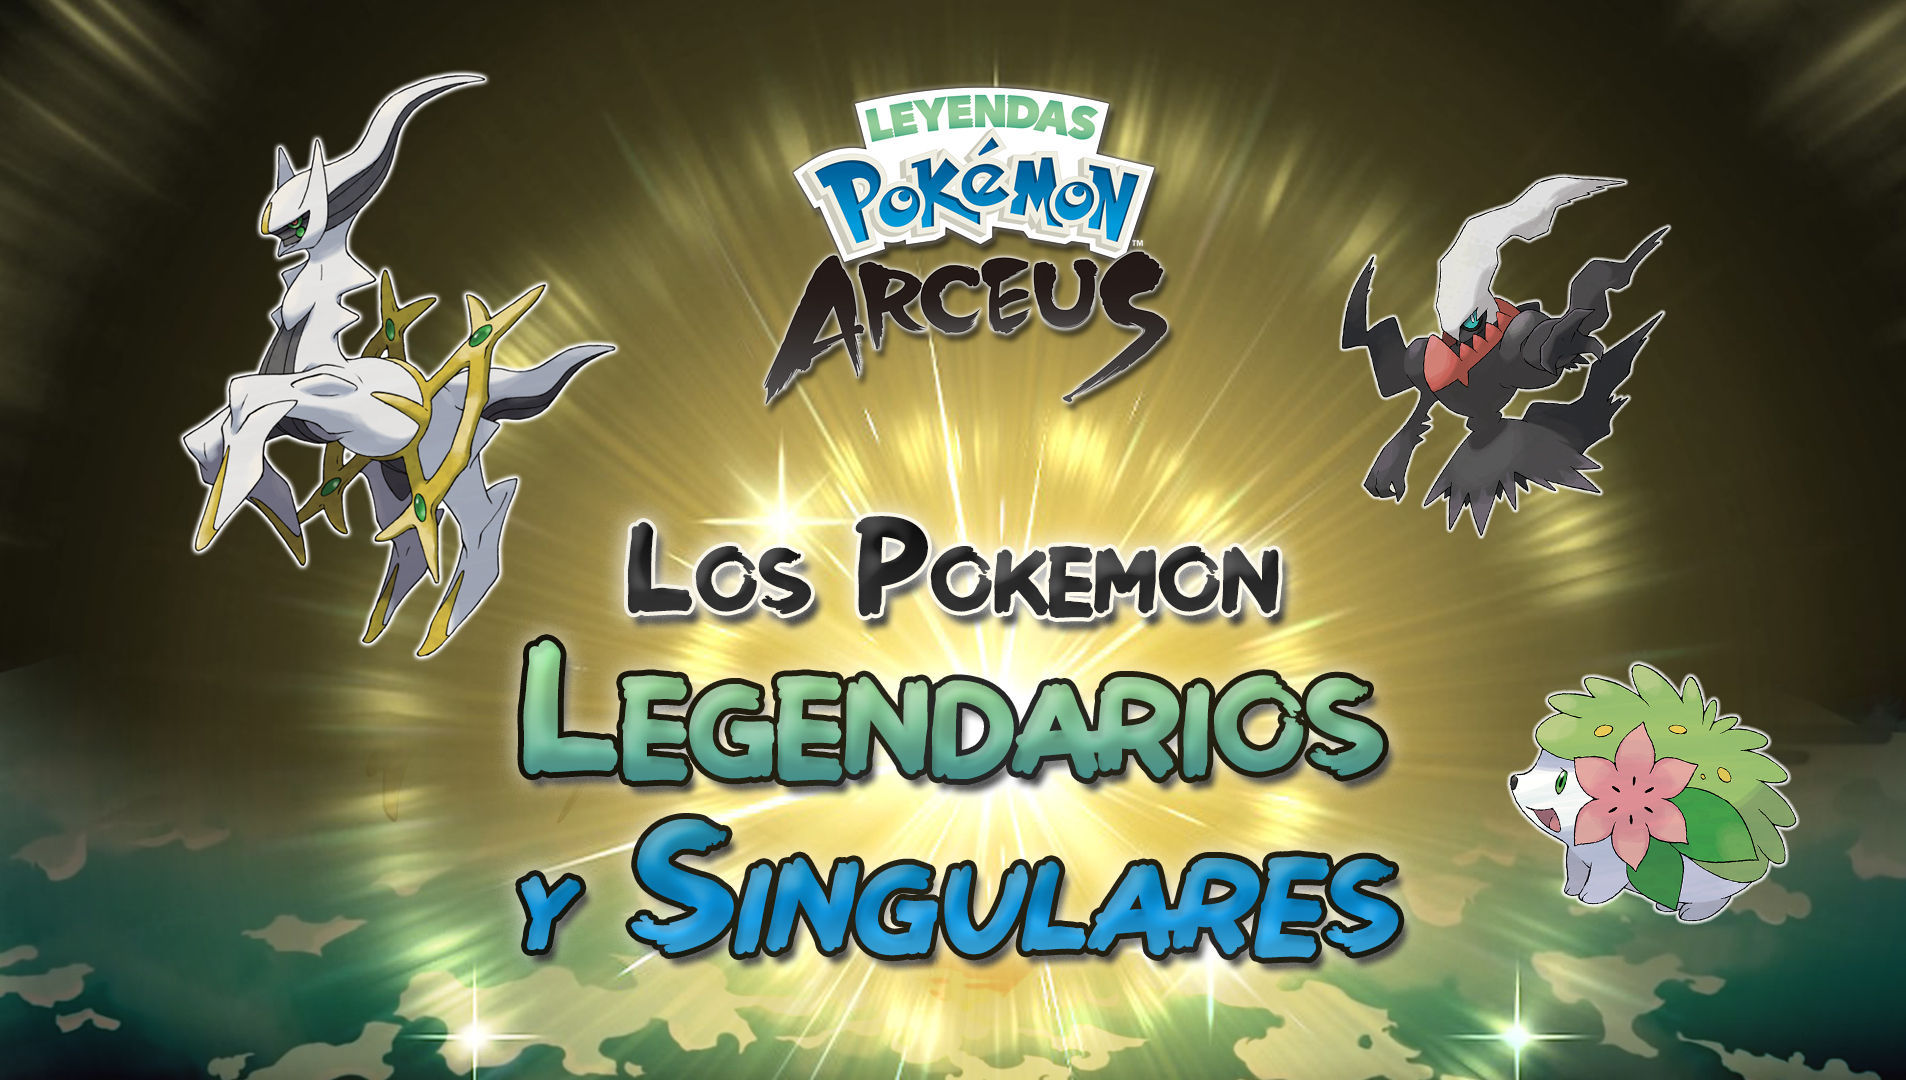 Pokémon Legends: Arceus - Todos os Pokémon Lendários e Pokémon